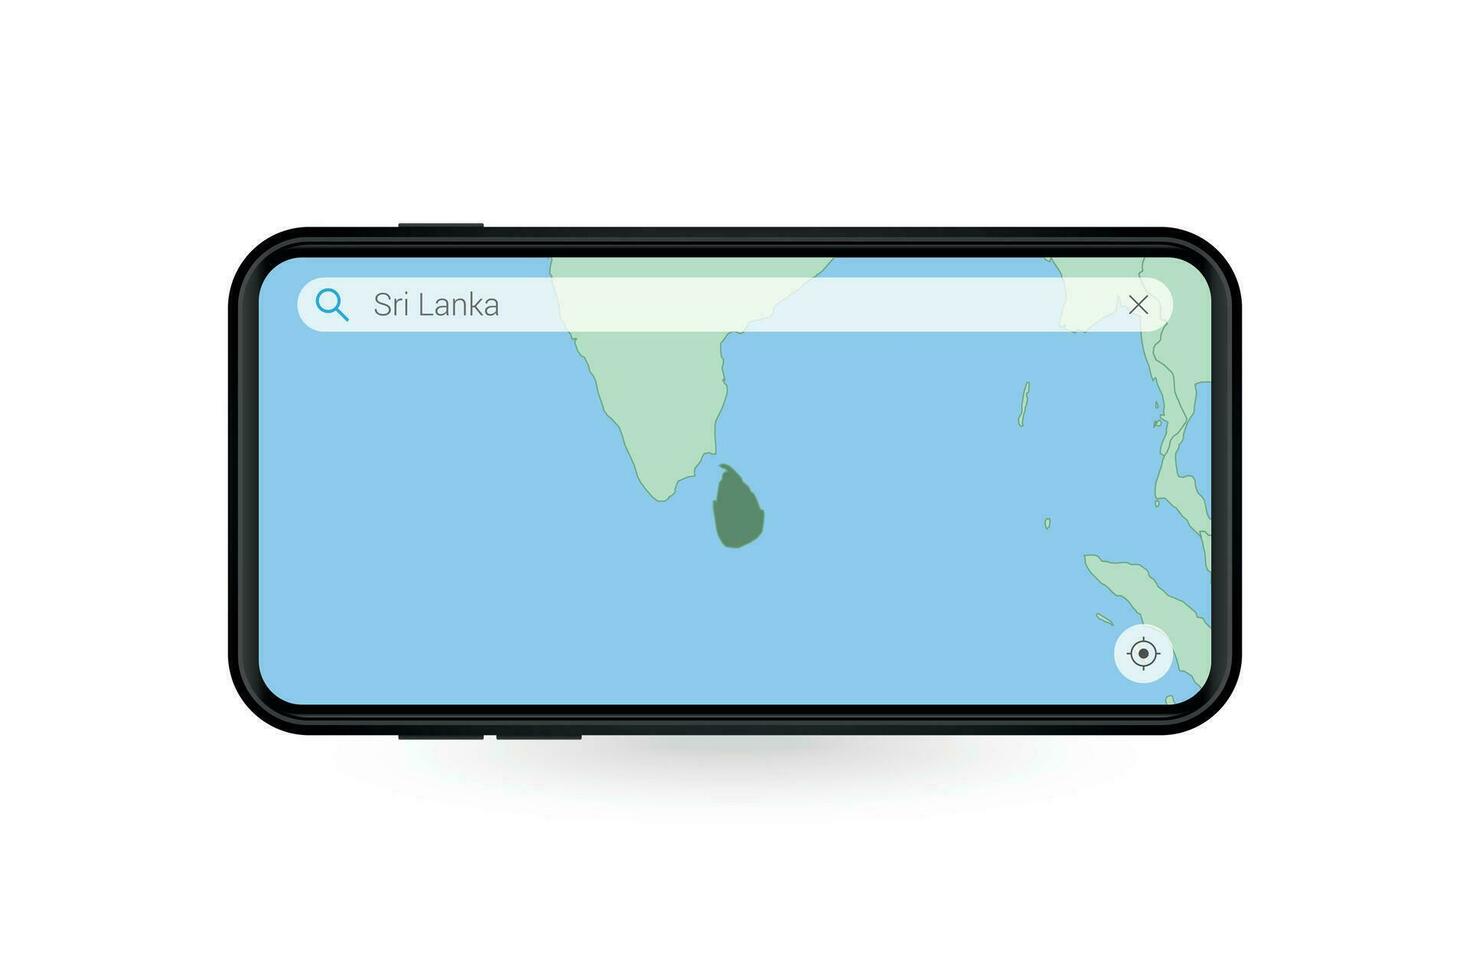 buscando mapa de sri lanka en teléfono inteligente mapa solicitud. mapa de sri lanka en célula teléfono. vector